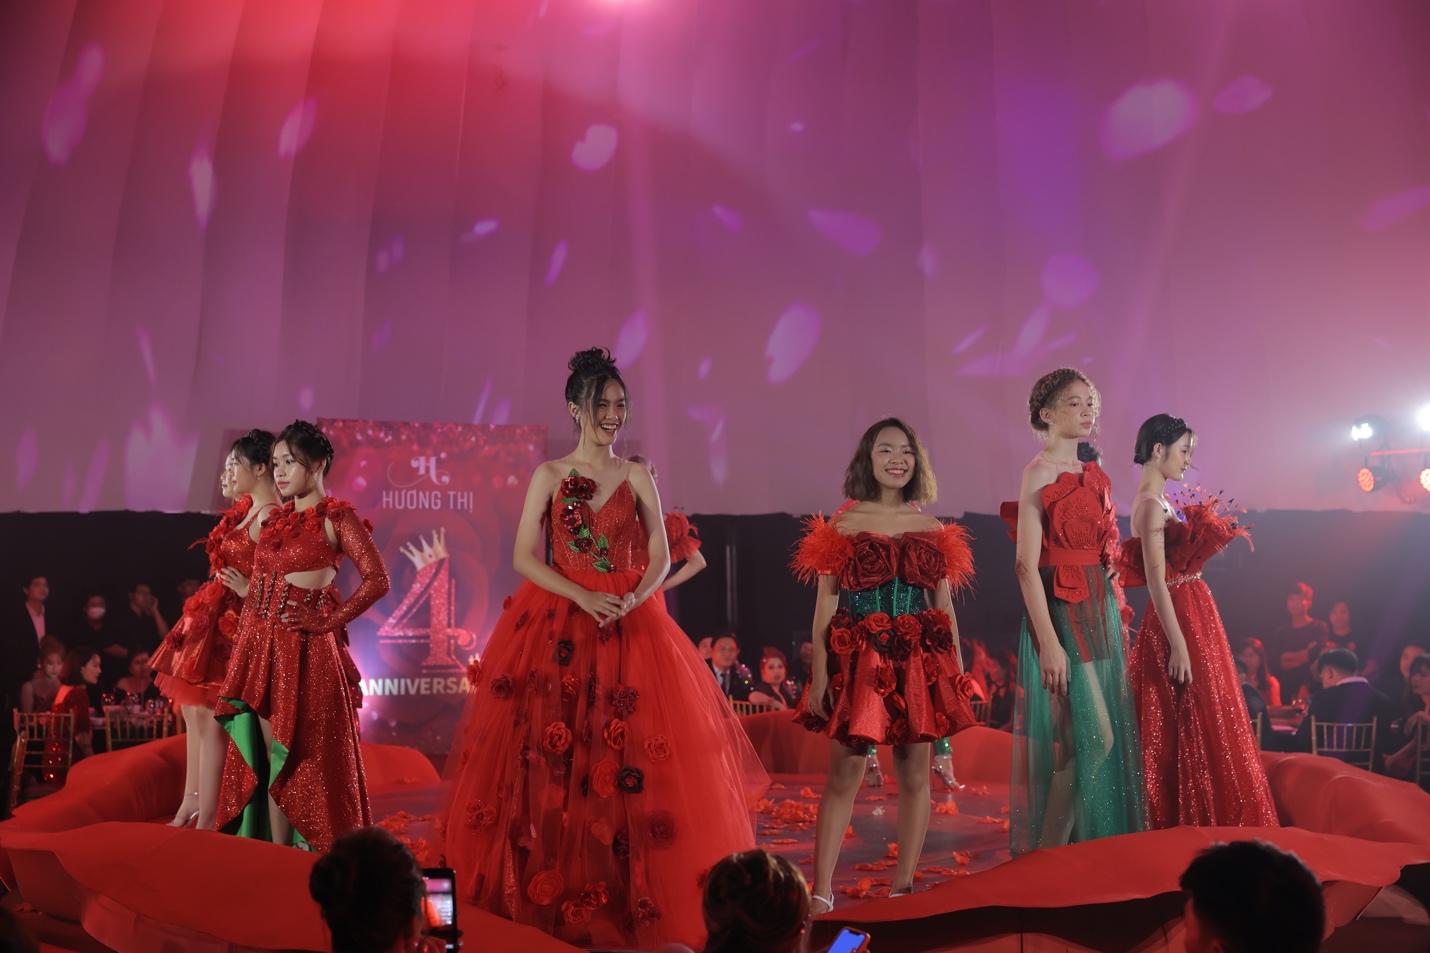 Hàng ngàn bông hồng tô điểm trong kỷ niệm 4 năm thành lập mỹ phẩm cao cấp Hương Thị - 5